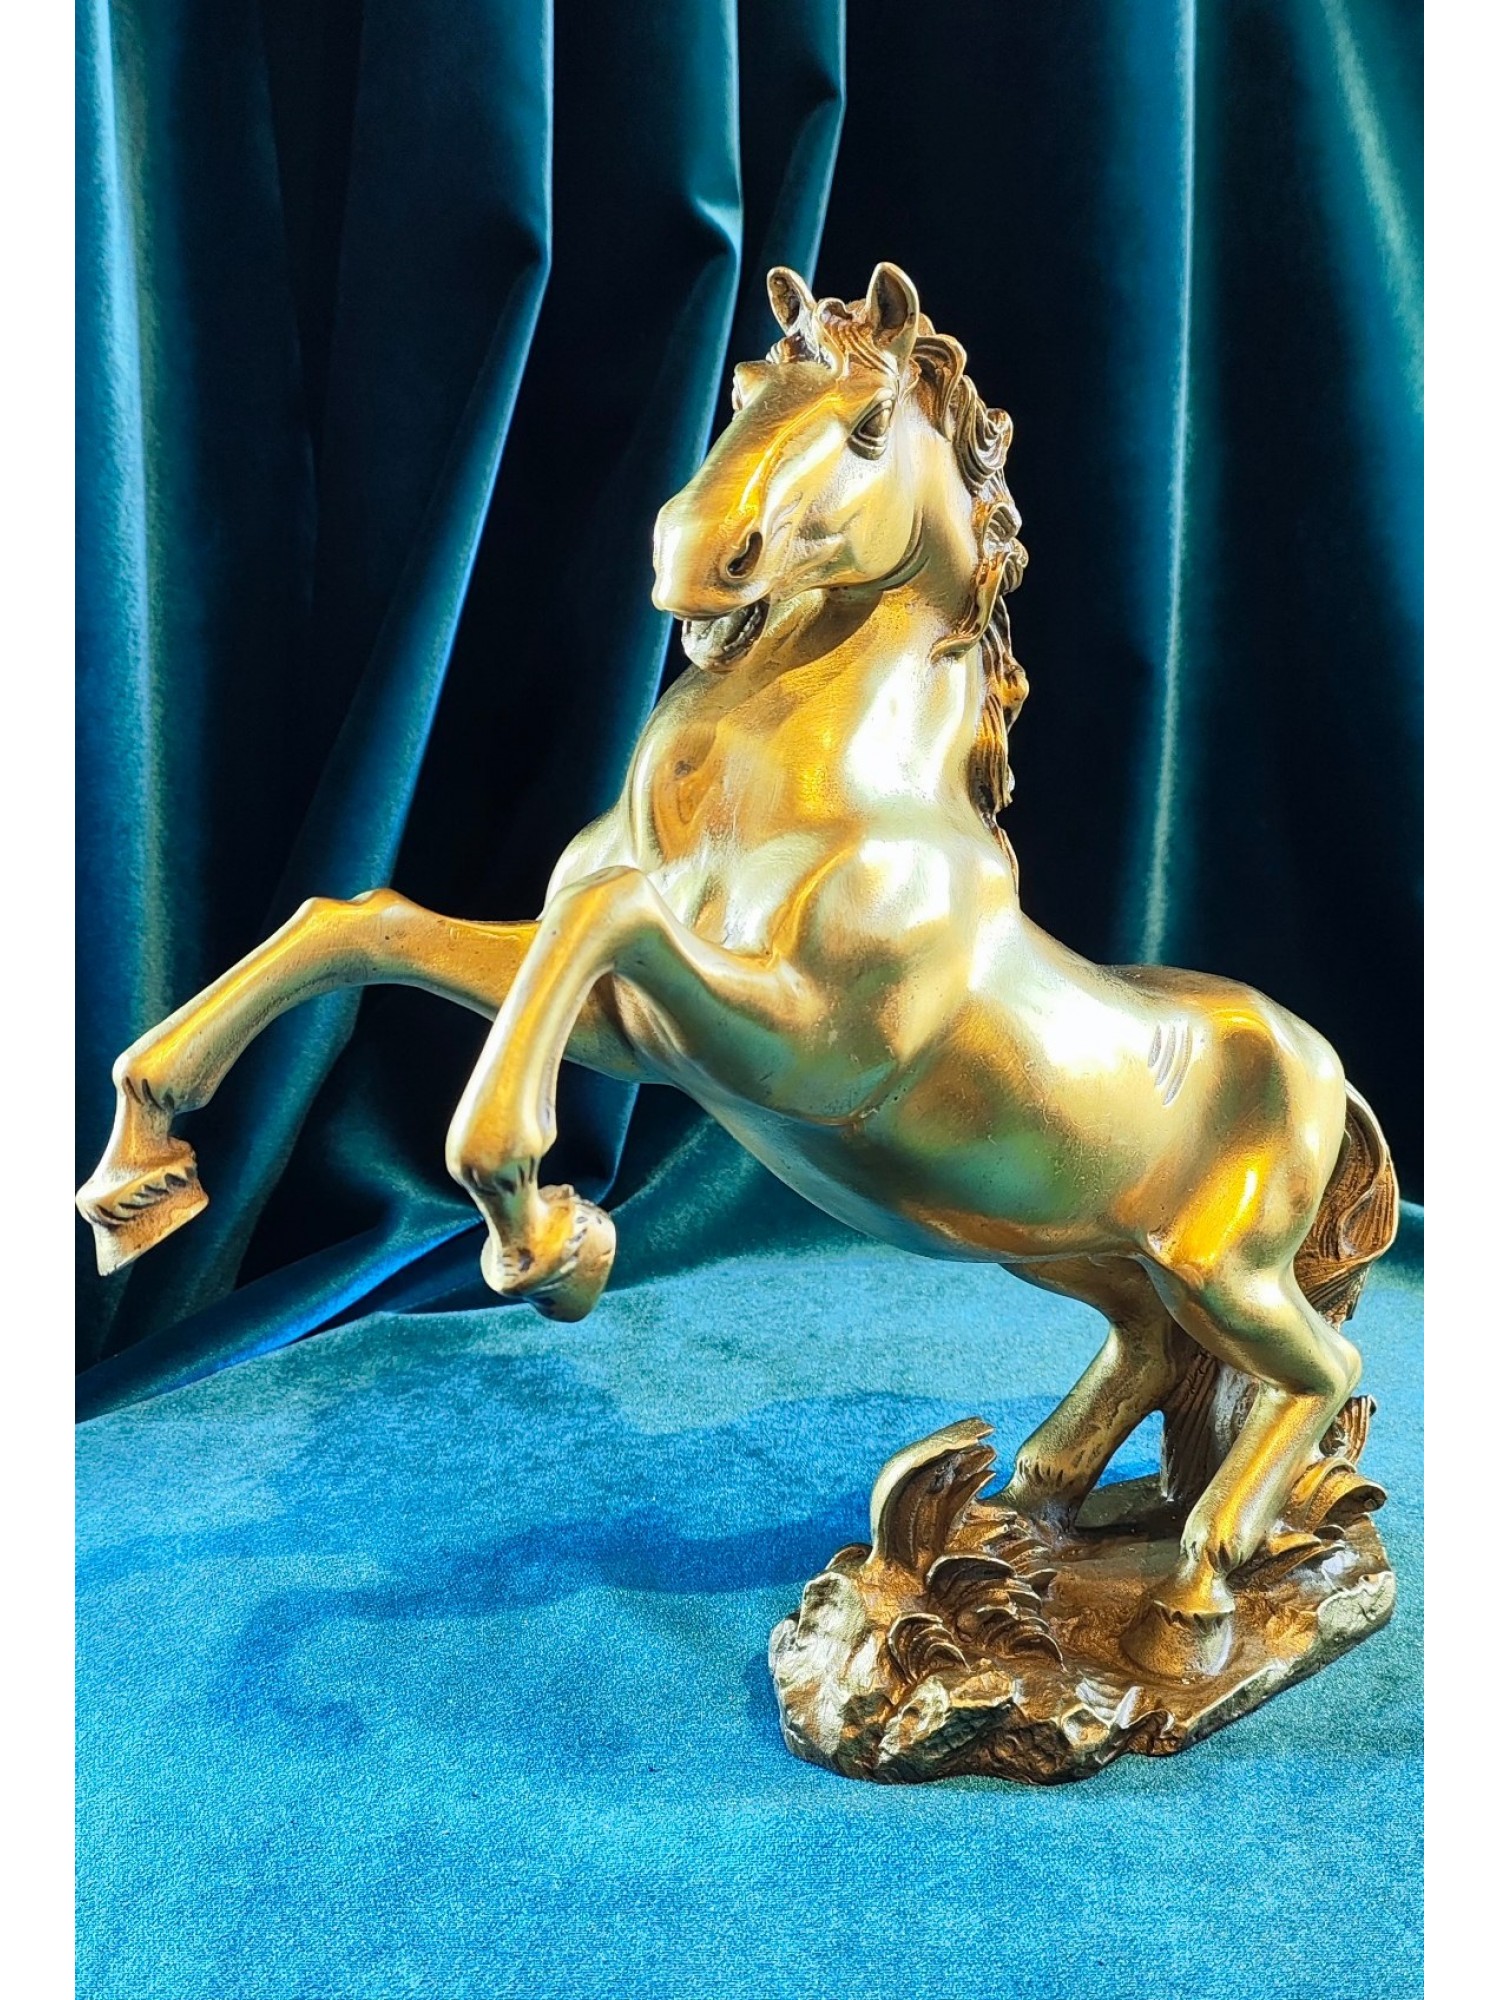 Конь бронзовый вздыбленный - свобода, грация, мощь и выдержка